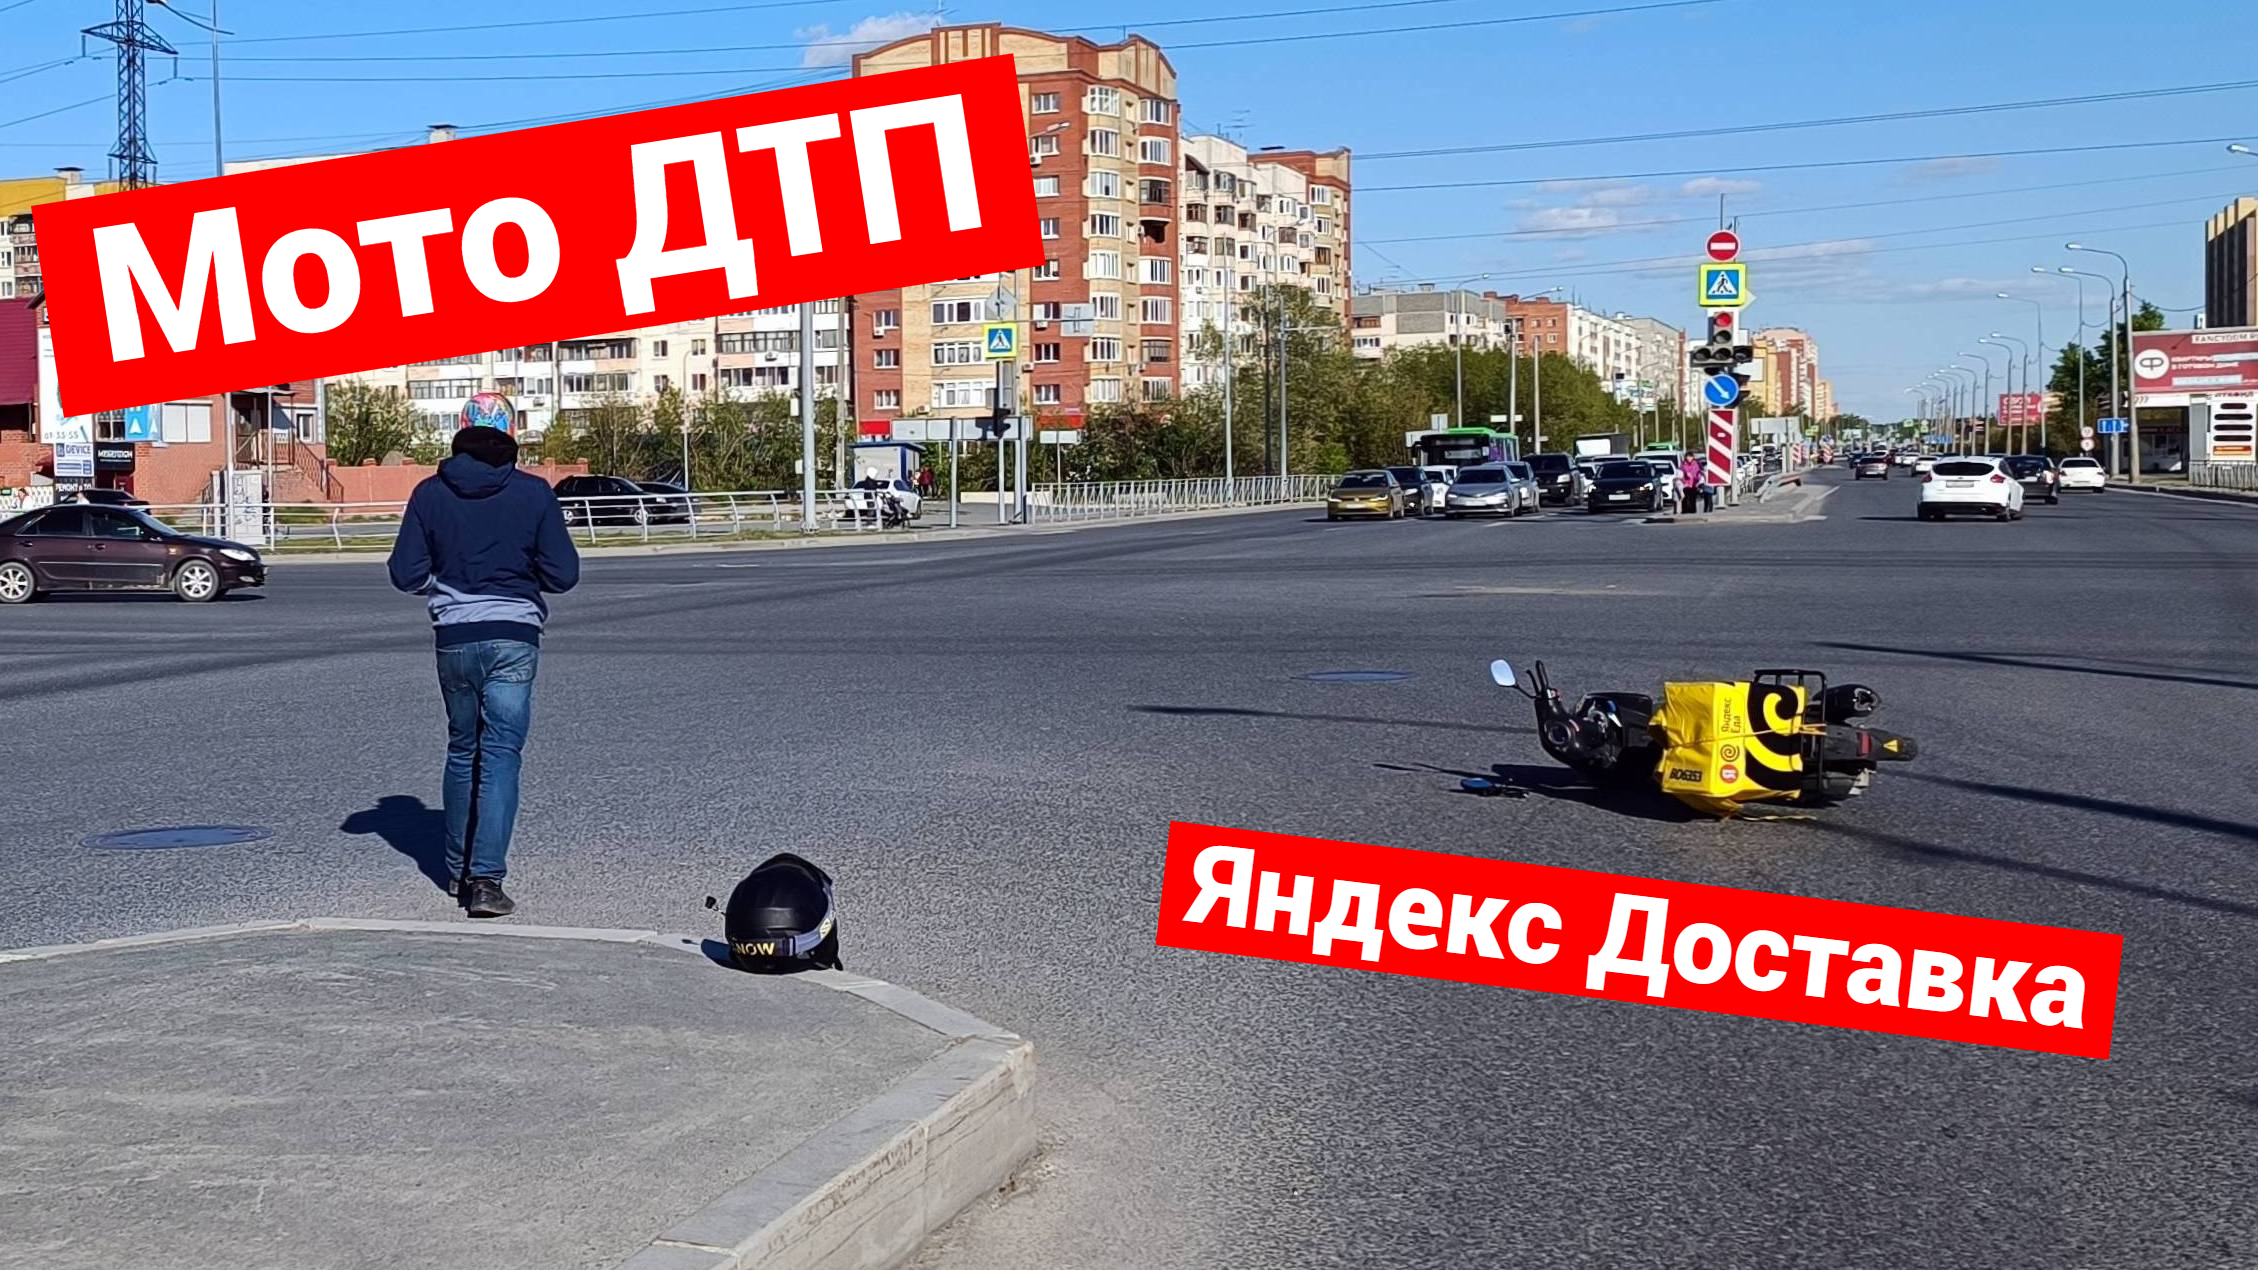 Мото ДТП с Яндекс Доставкой